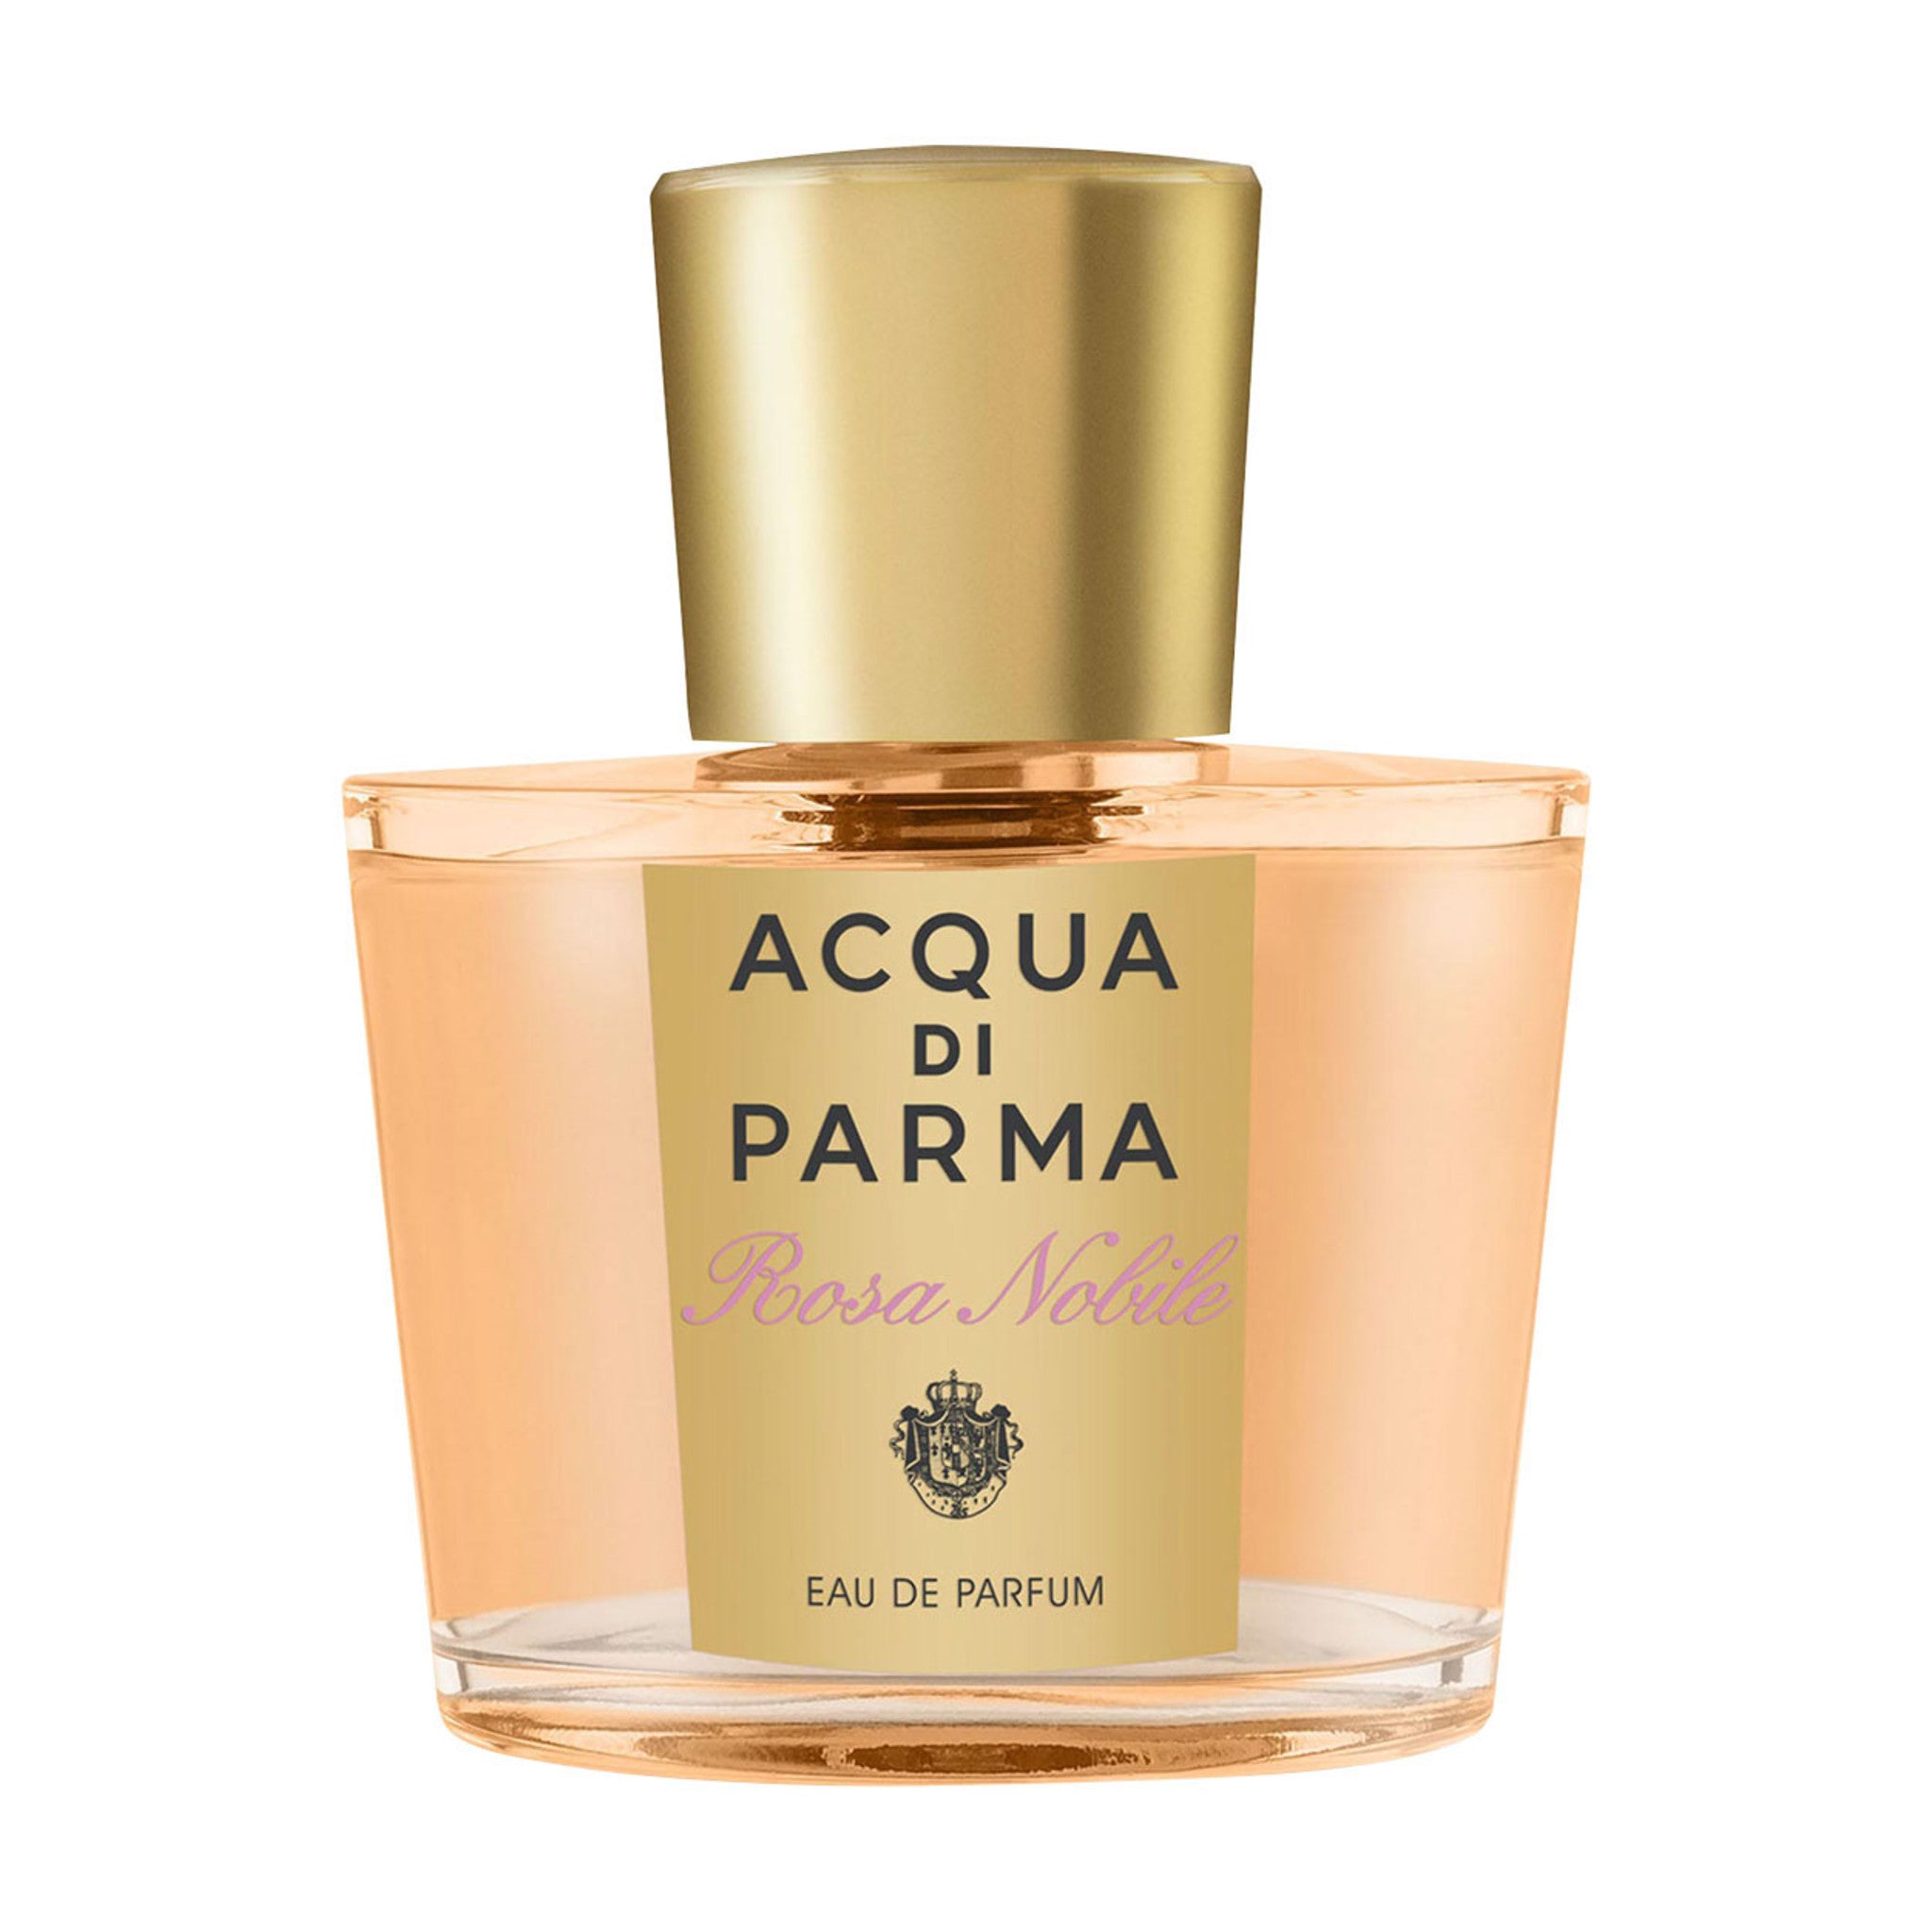 New Acqua di Parma fragrance !